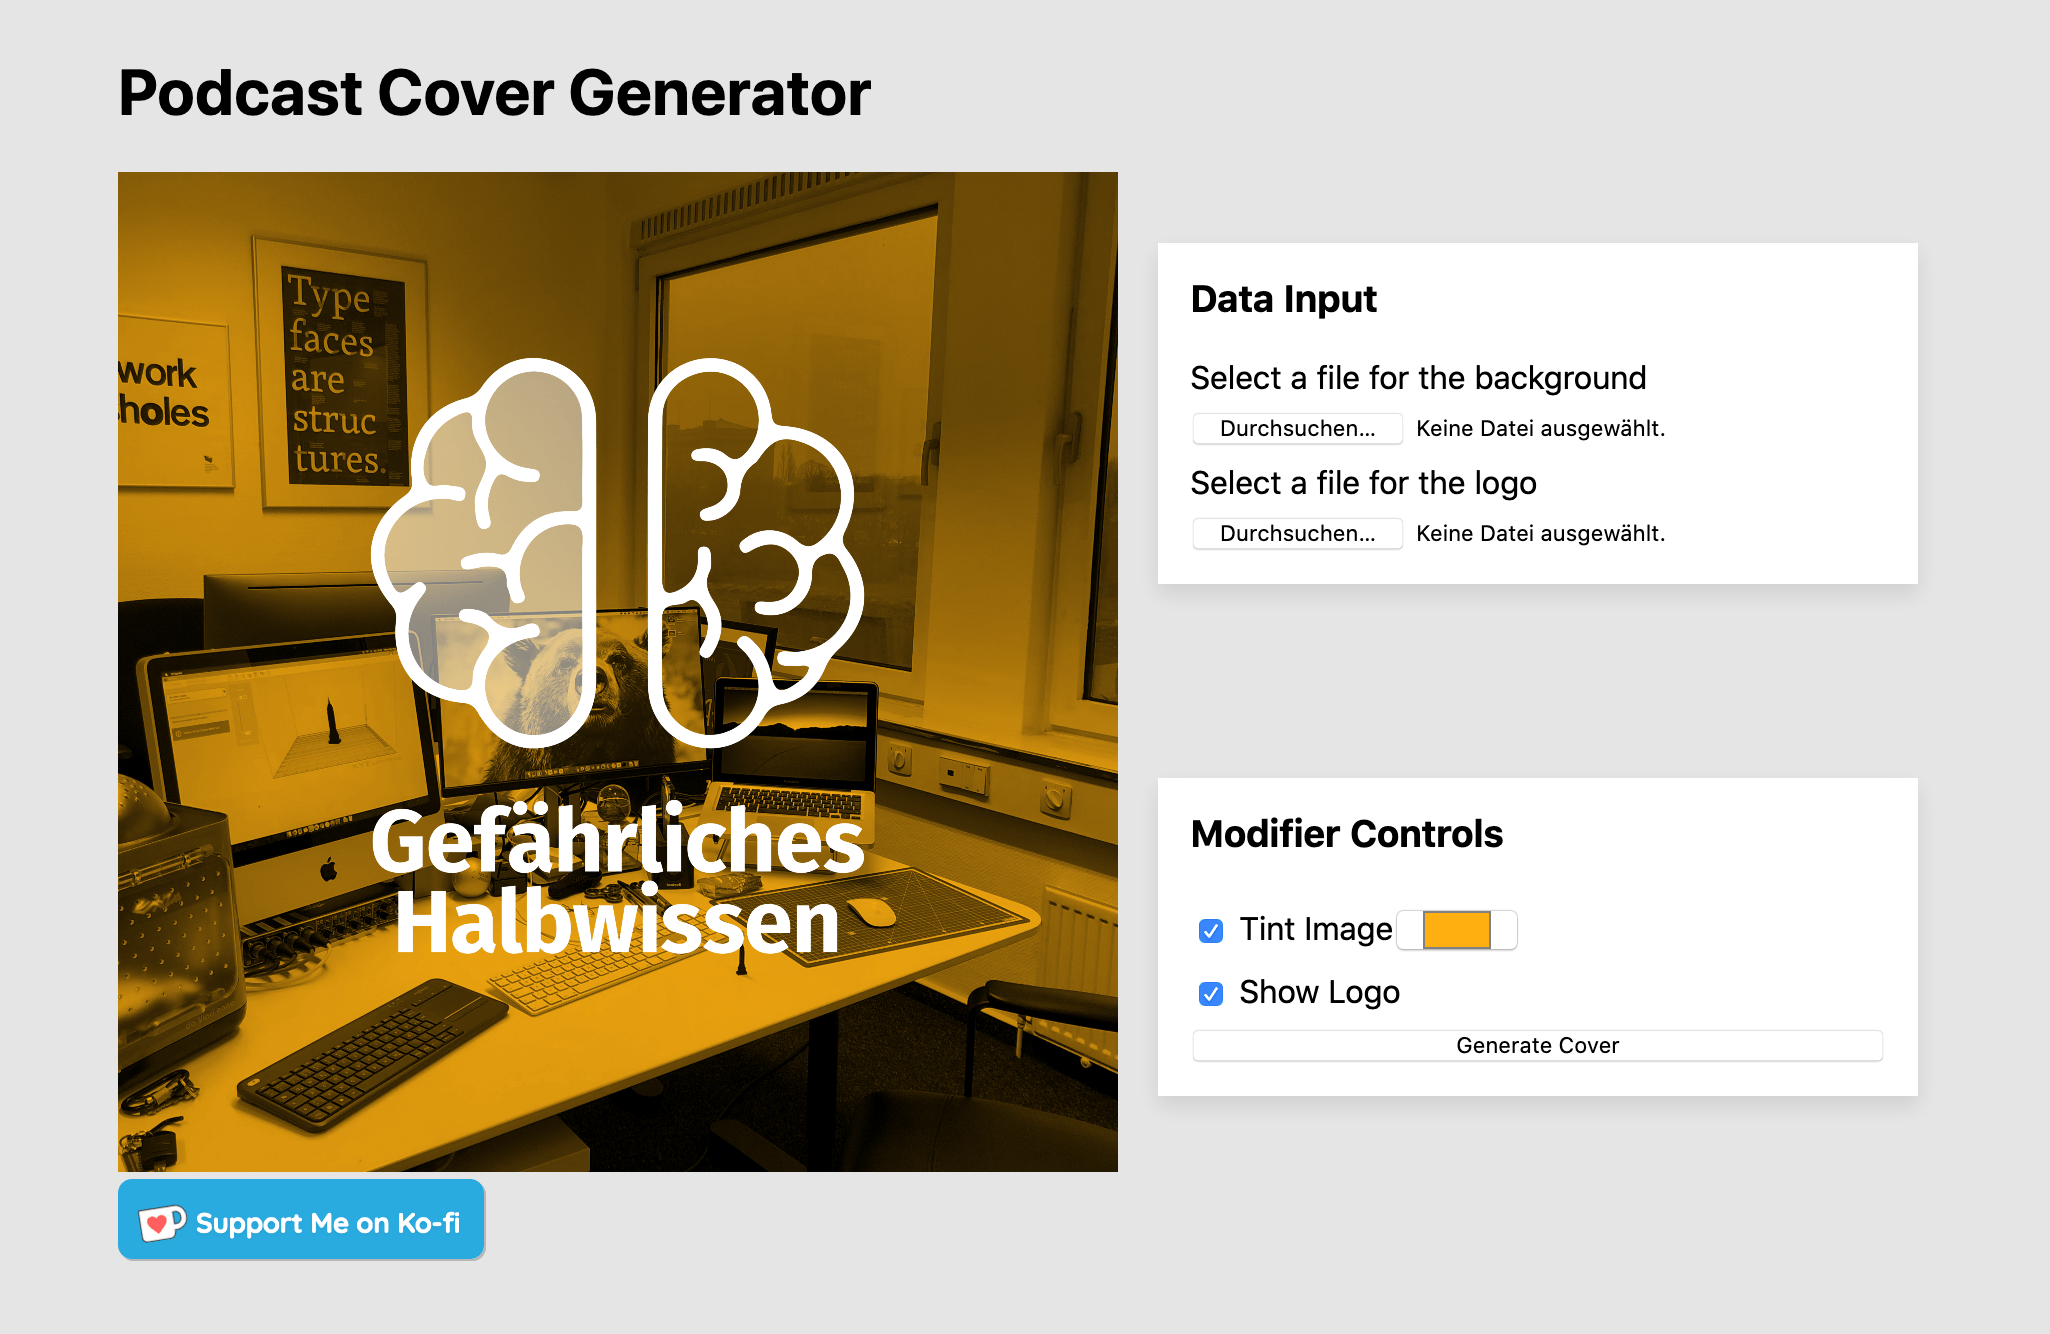 Der Generator für Podcast Cover